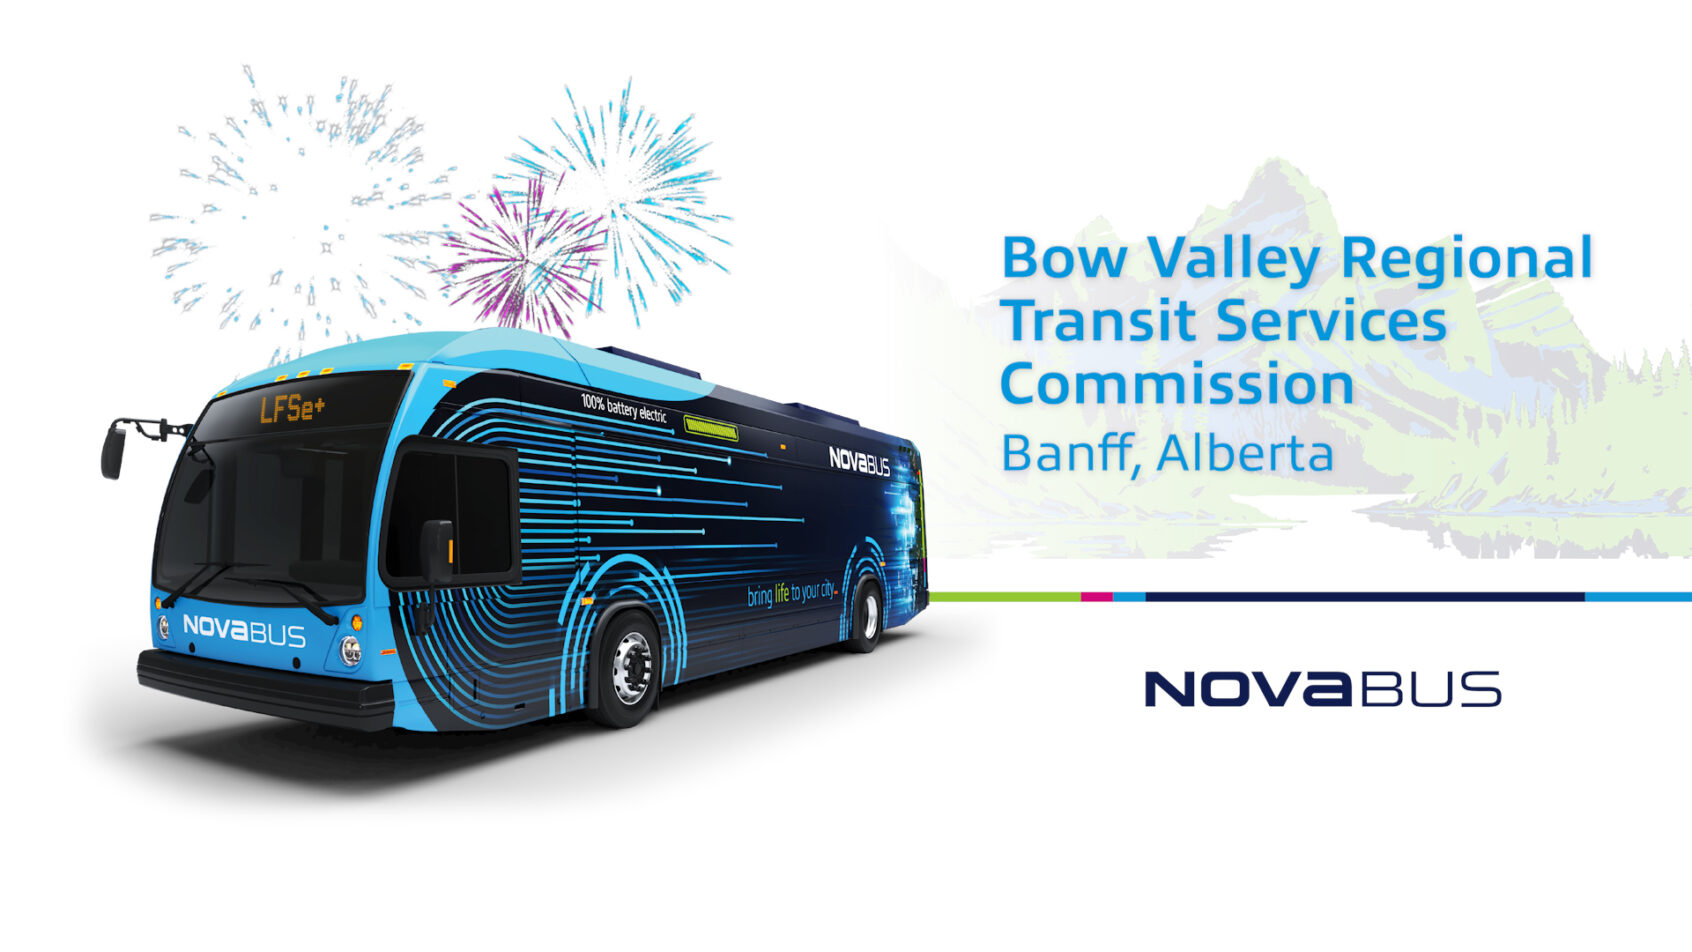 La Bow Valley Regional Transit Services Commission à Banff, en Alberta, poursuit l’électrification de sa flotte avec Nova Bus en acquérant ses premiers LFSe+